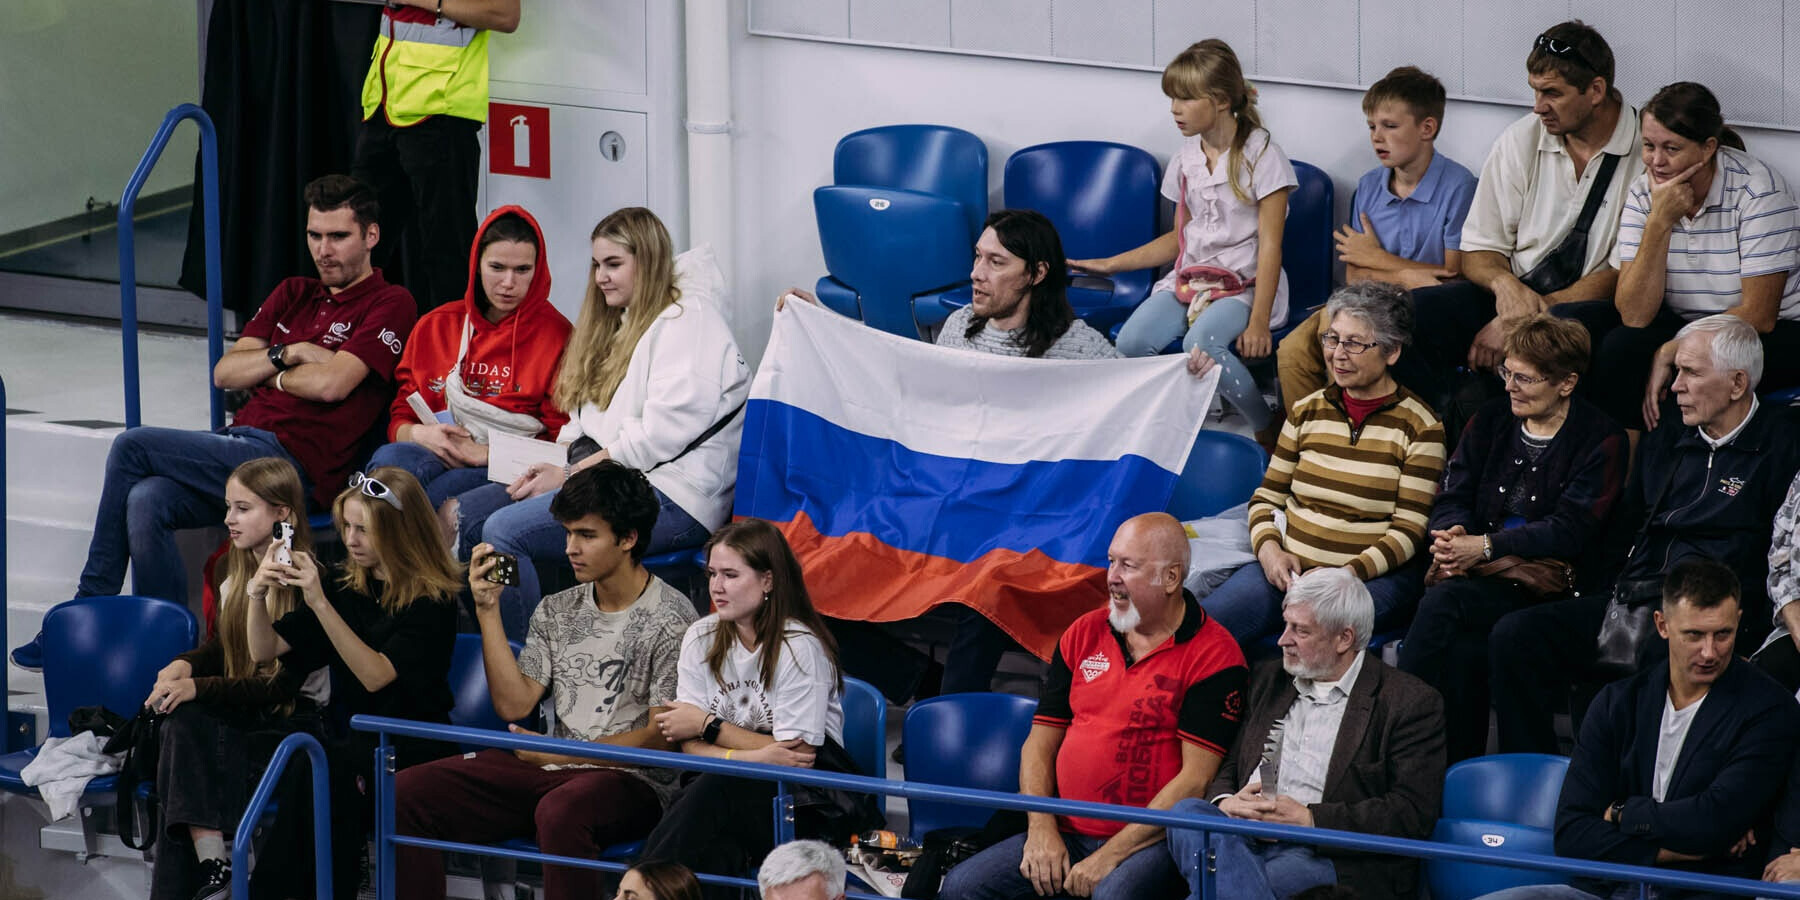 Сборная России спела гимн без музыки на турнире в США. Реакция американцев бесценна!